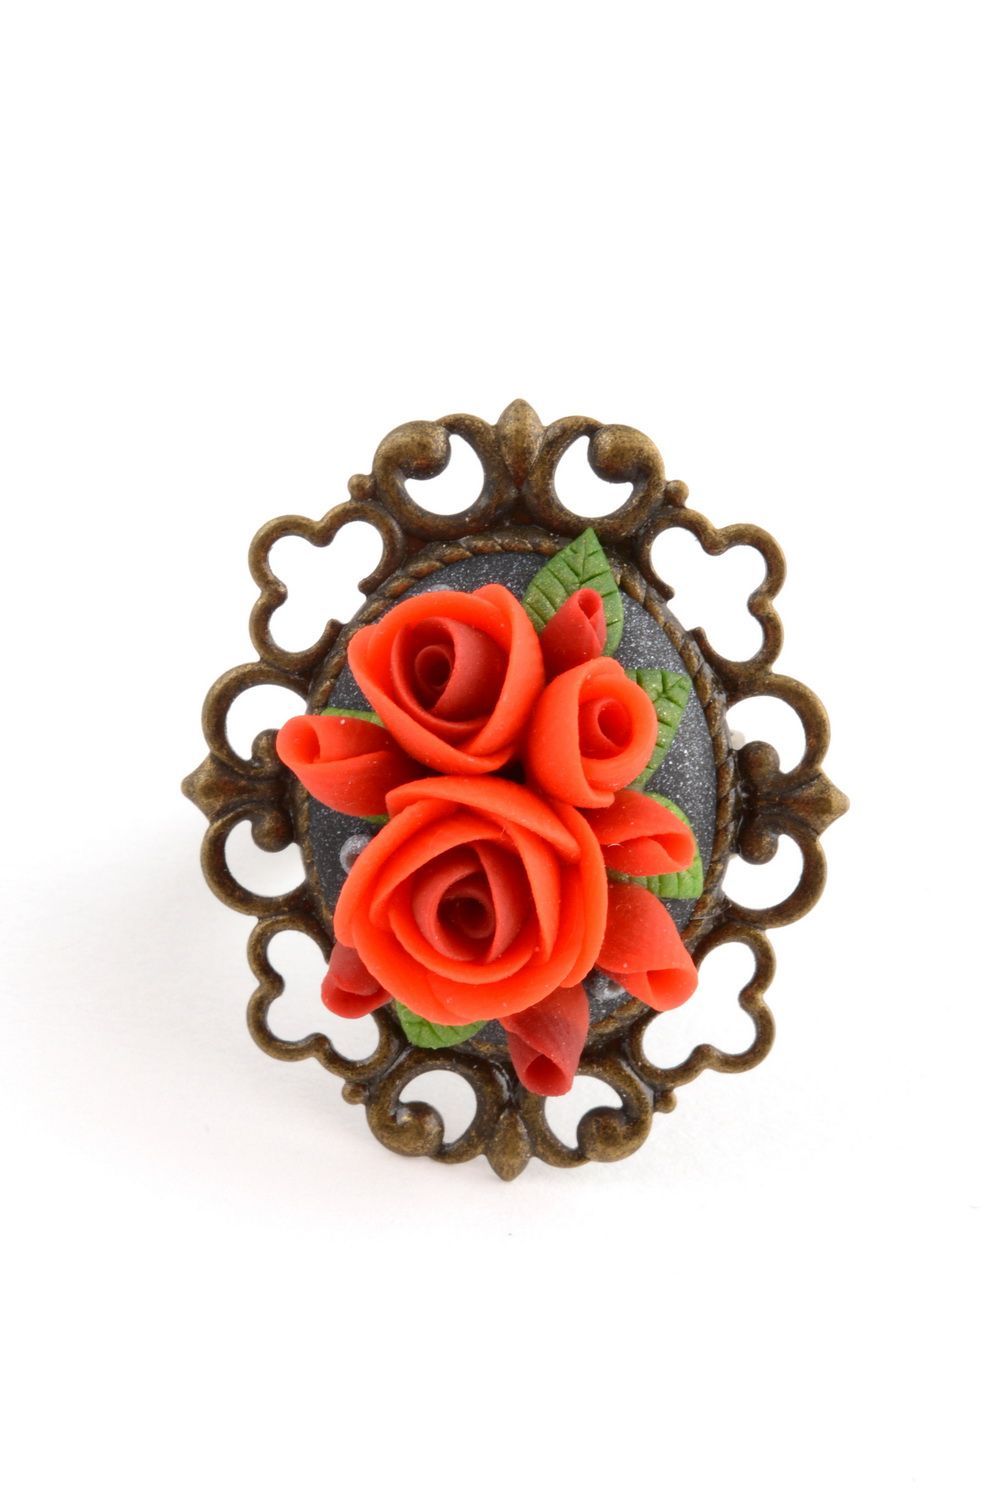 Кольцо цветок из полимерной глины красное диаметром 17 мм красивое ручной работы фото 2